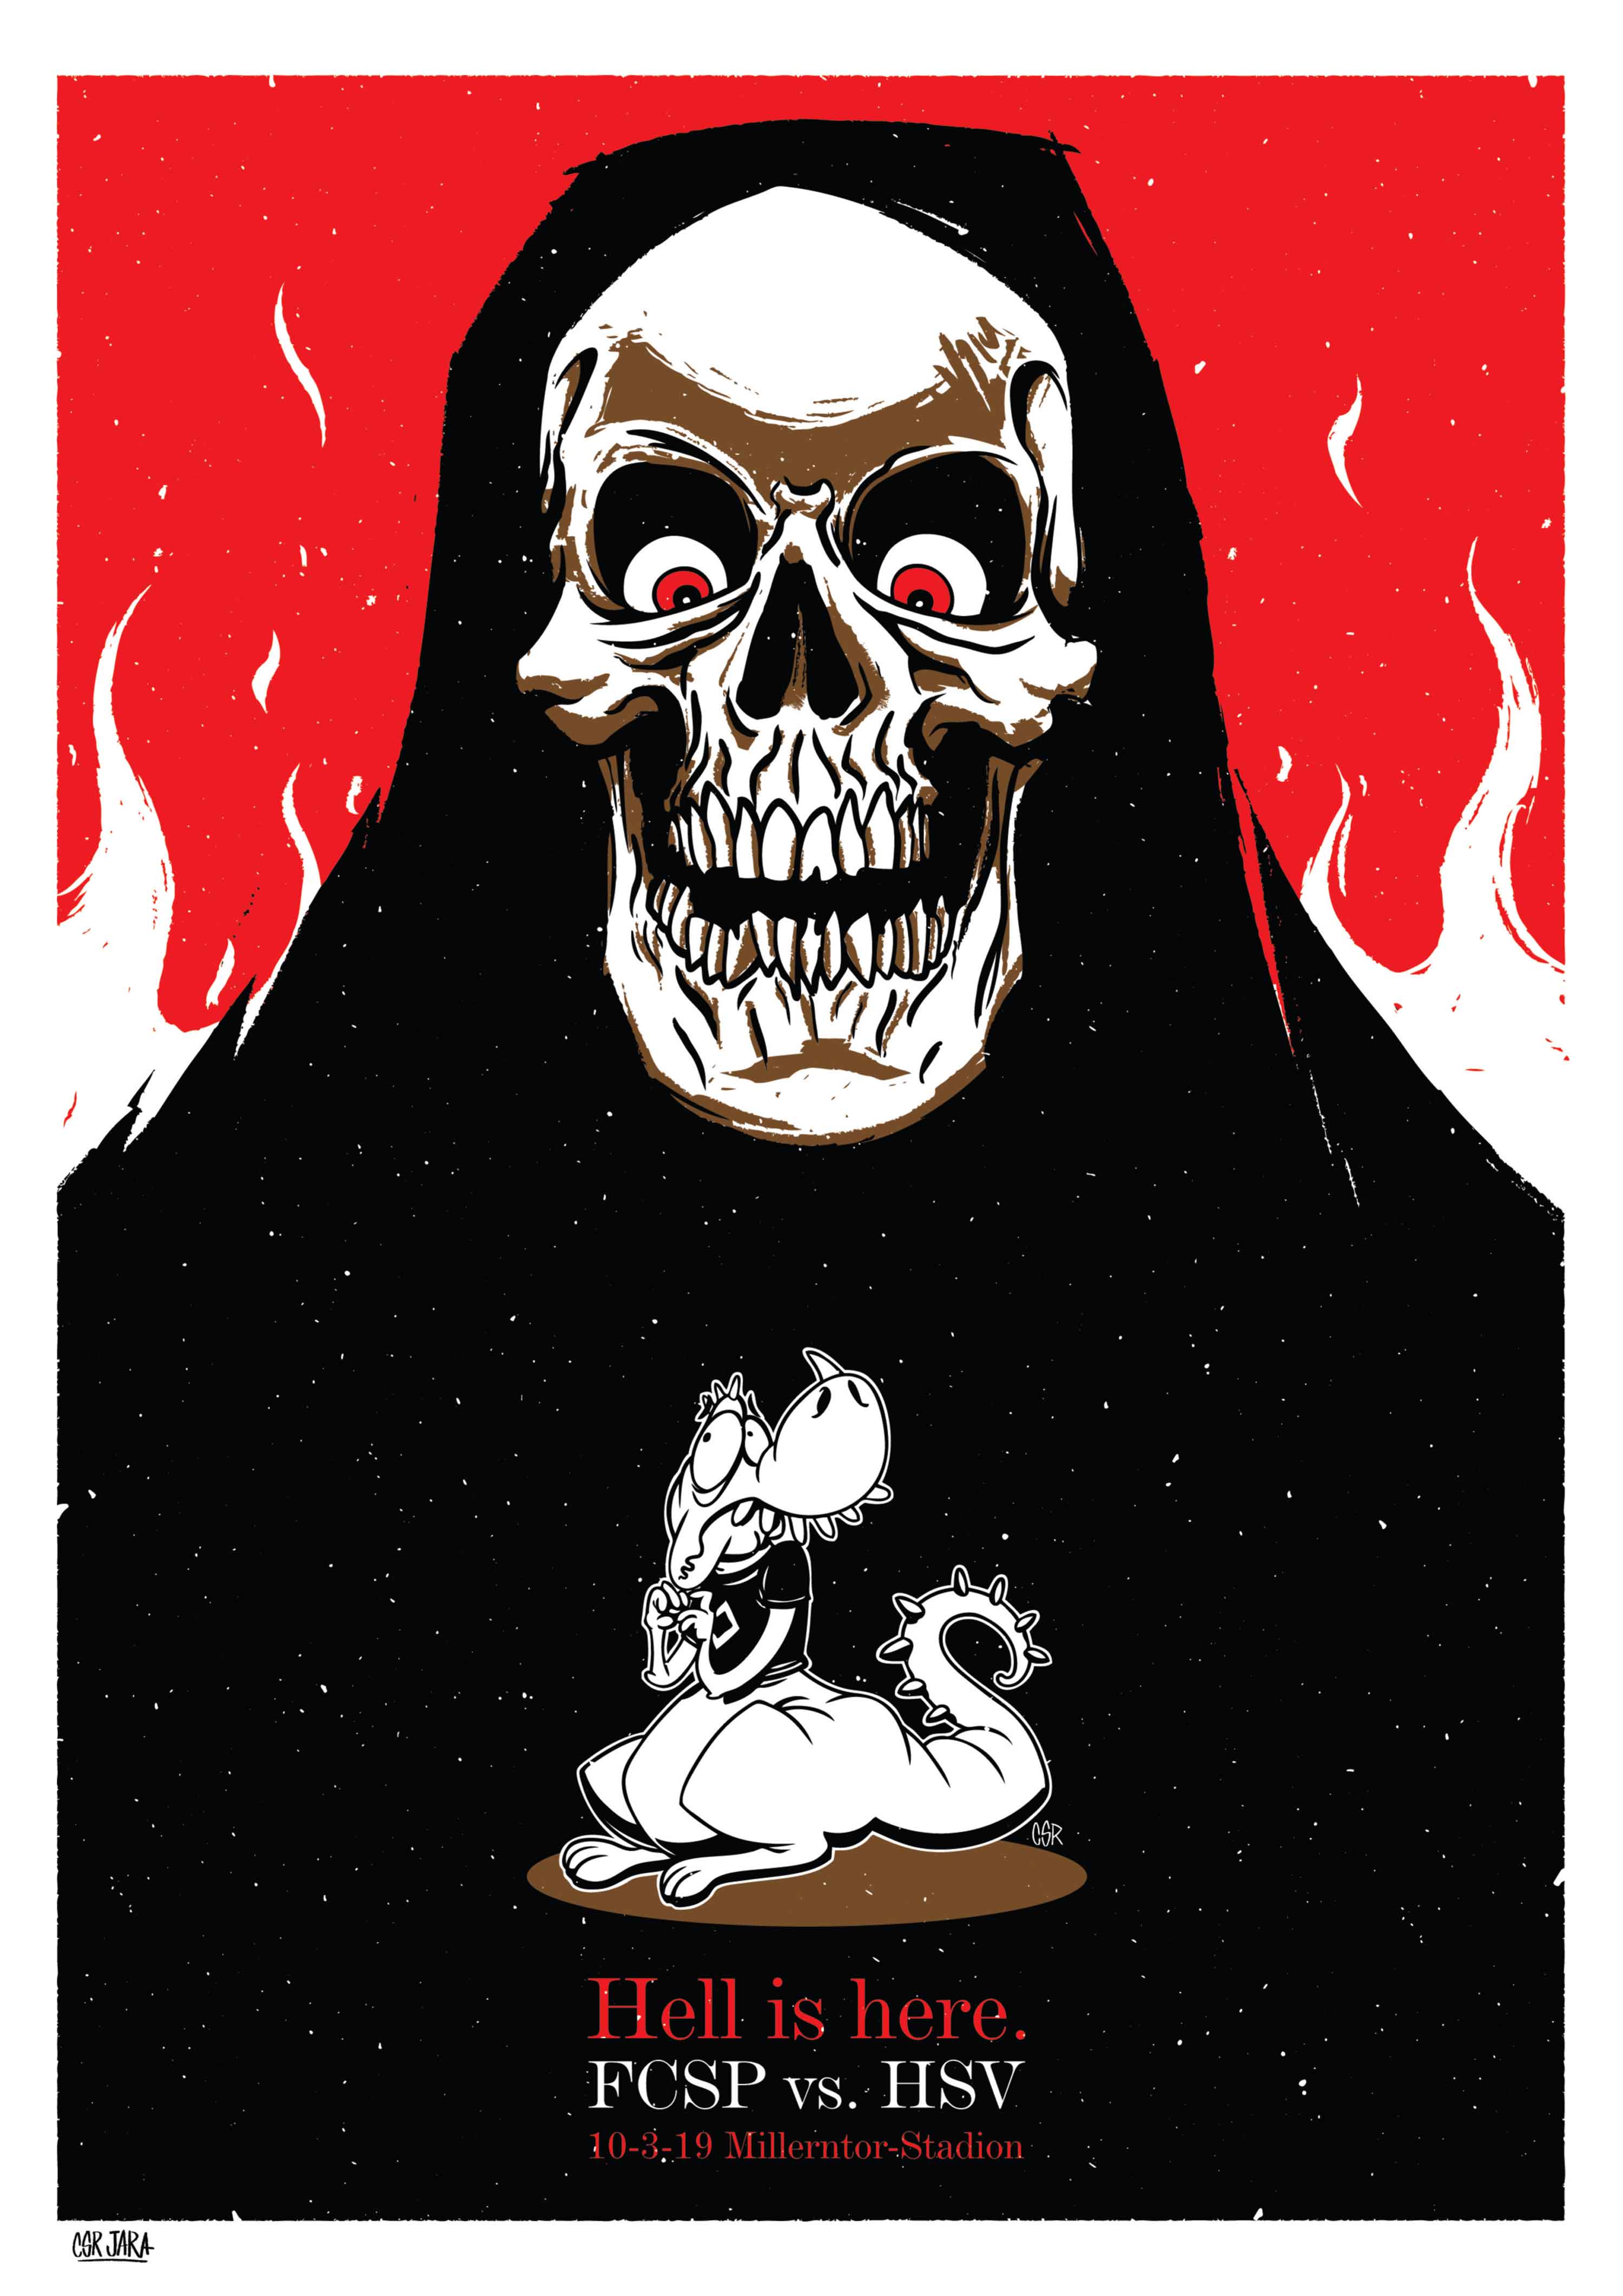 Der Derby-Kunstdruck von César Jara trägt den Titel "Hell is here".